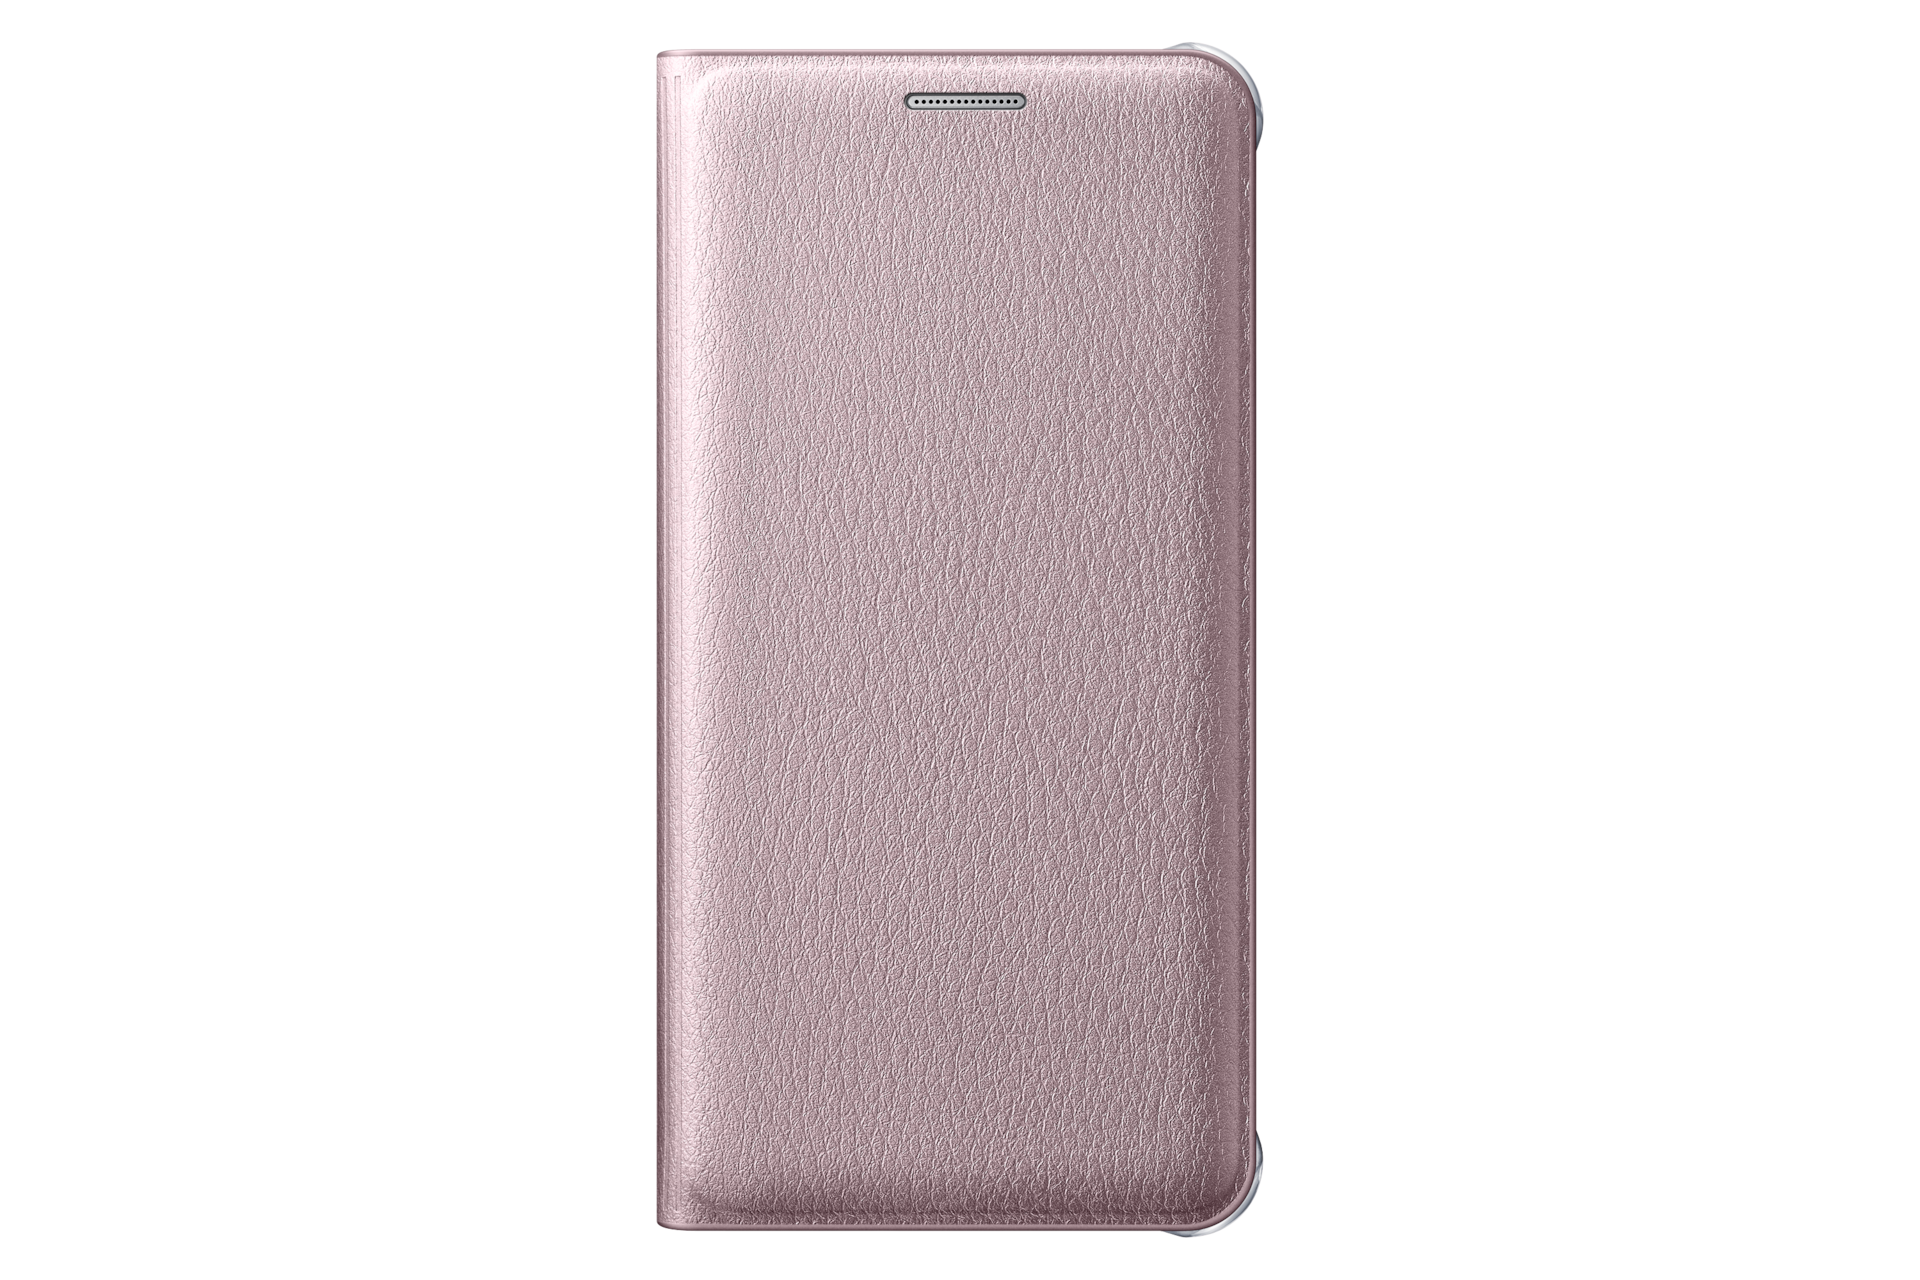 is genoeg in de rij gaan staan vlinder Galaxy A3 (2016) Flip Wallet Cover | Samsung Support UK